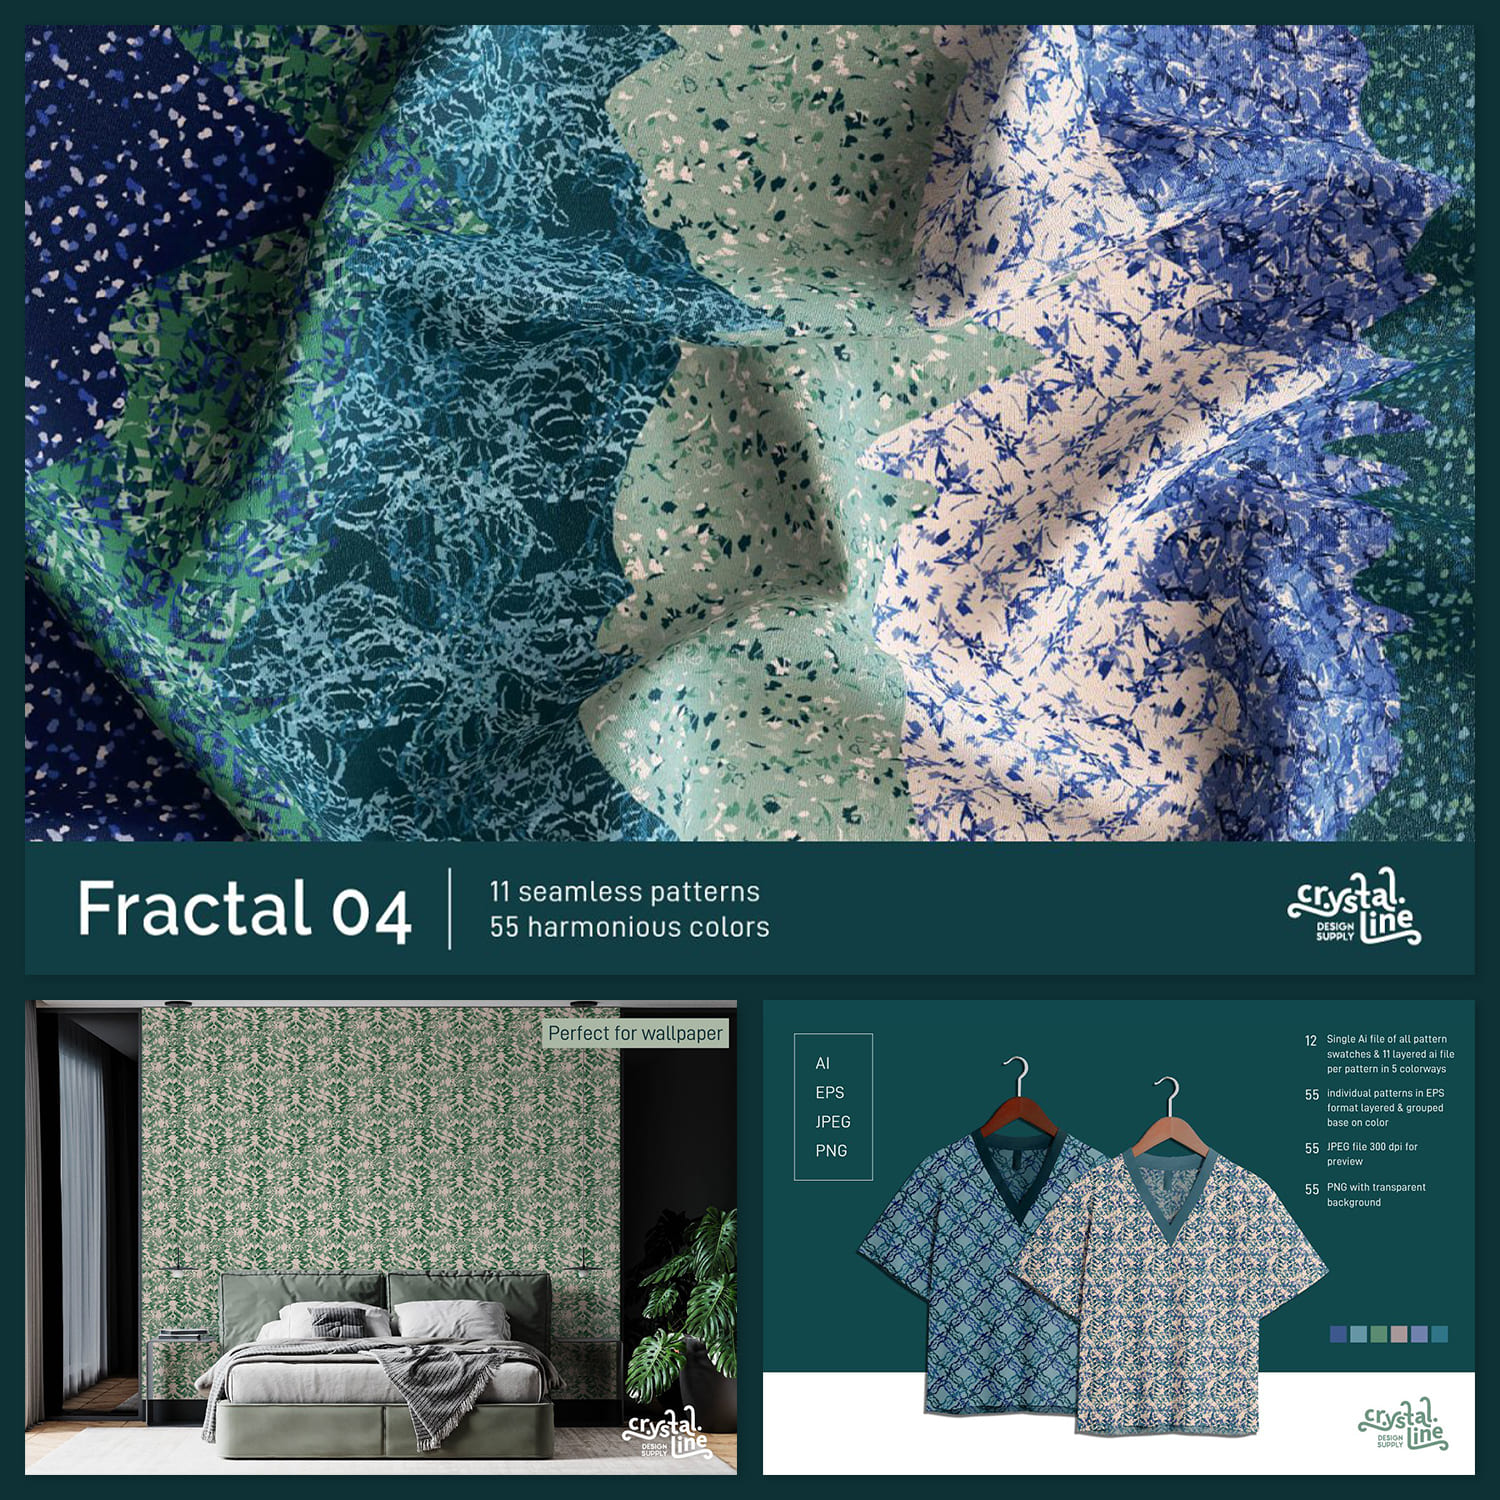 Fractal Patterns 04 cover image.